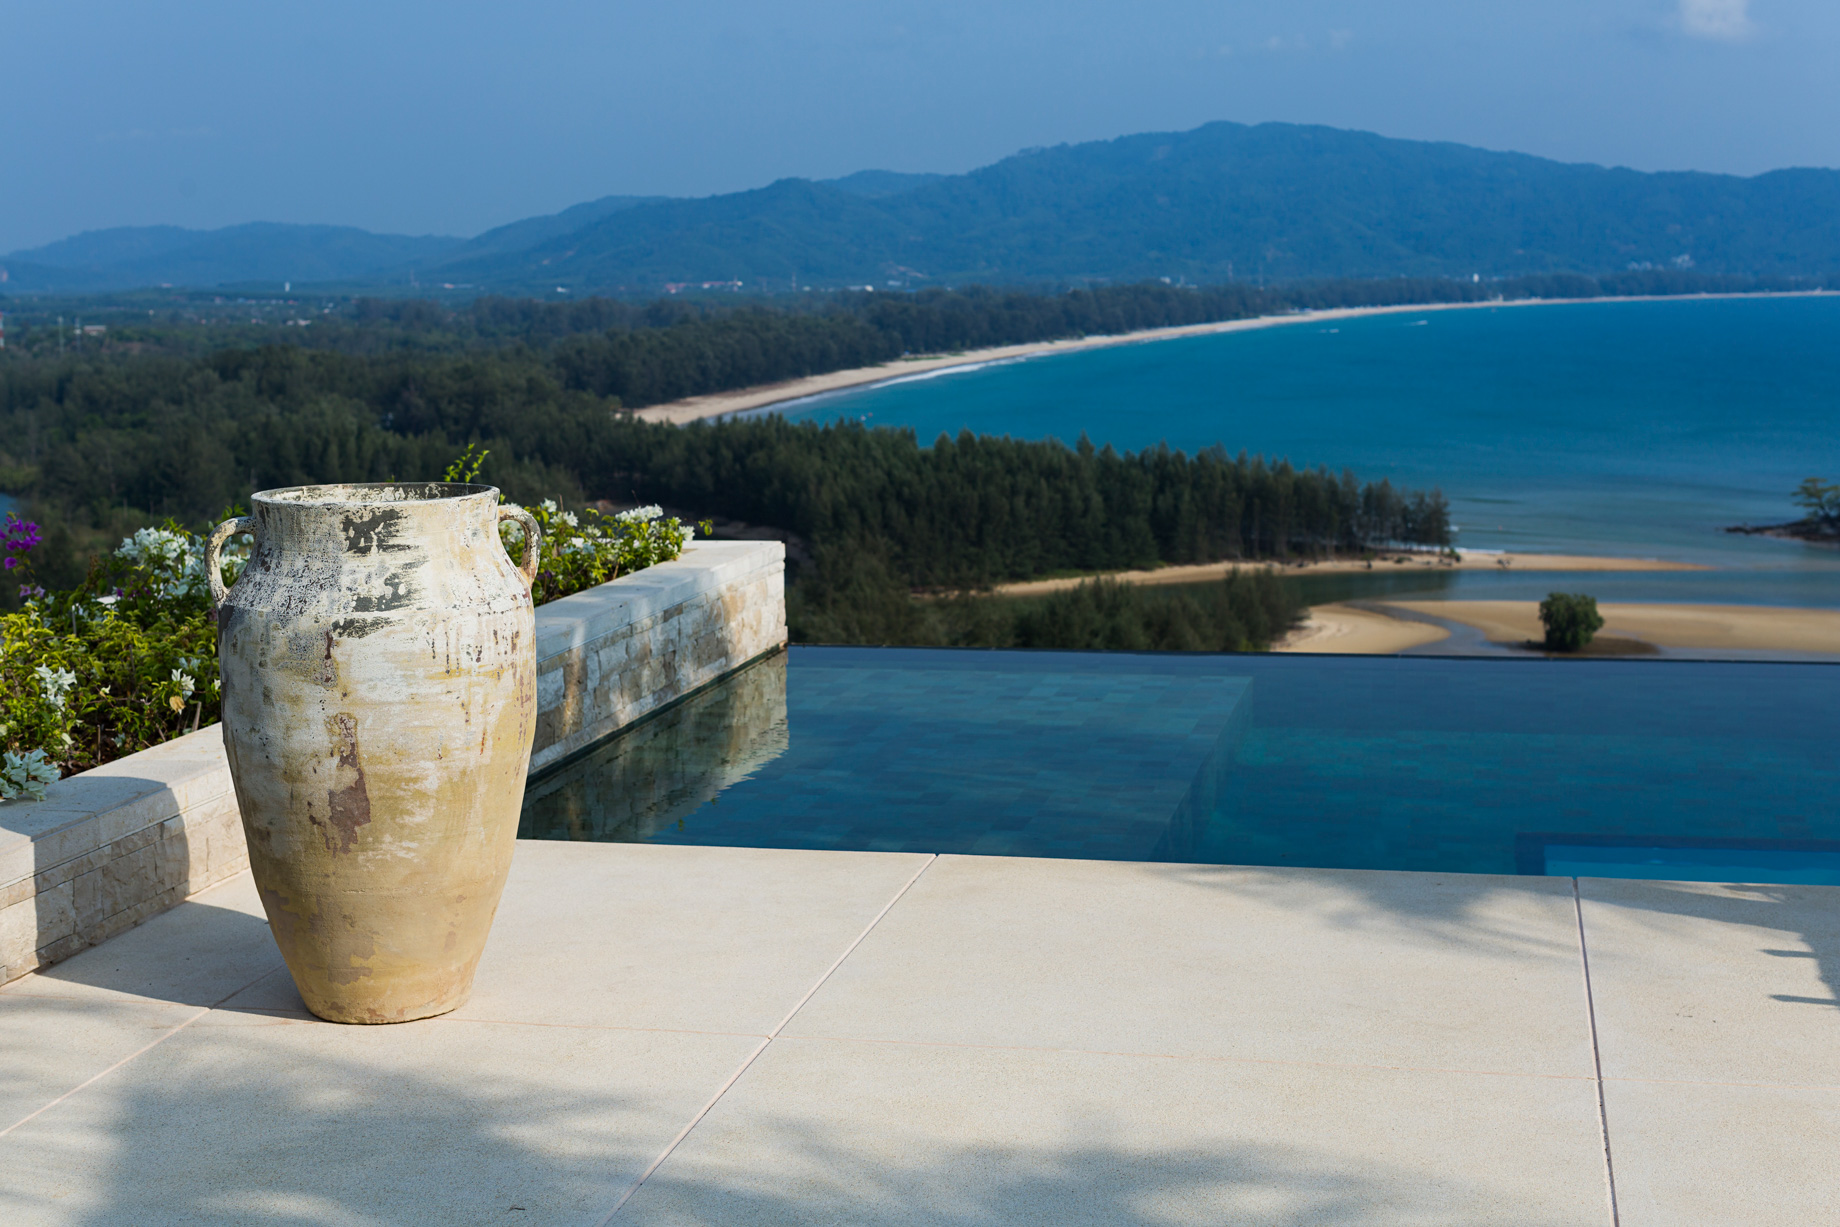 Anantara Layan Phuket Resort & Residences - Thailand - Residence Pool Deck View